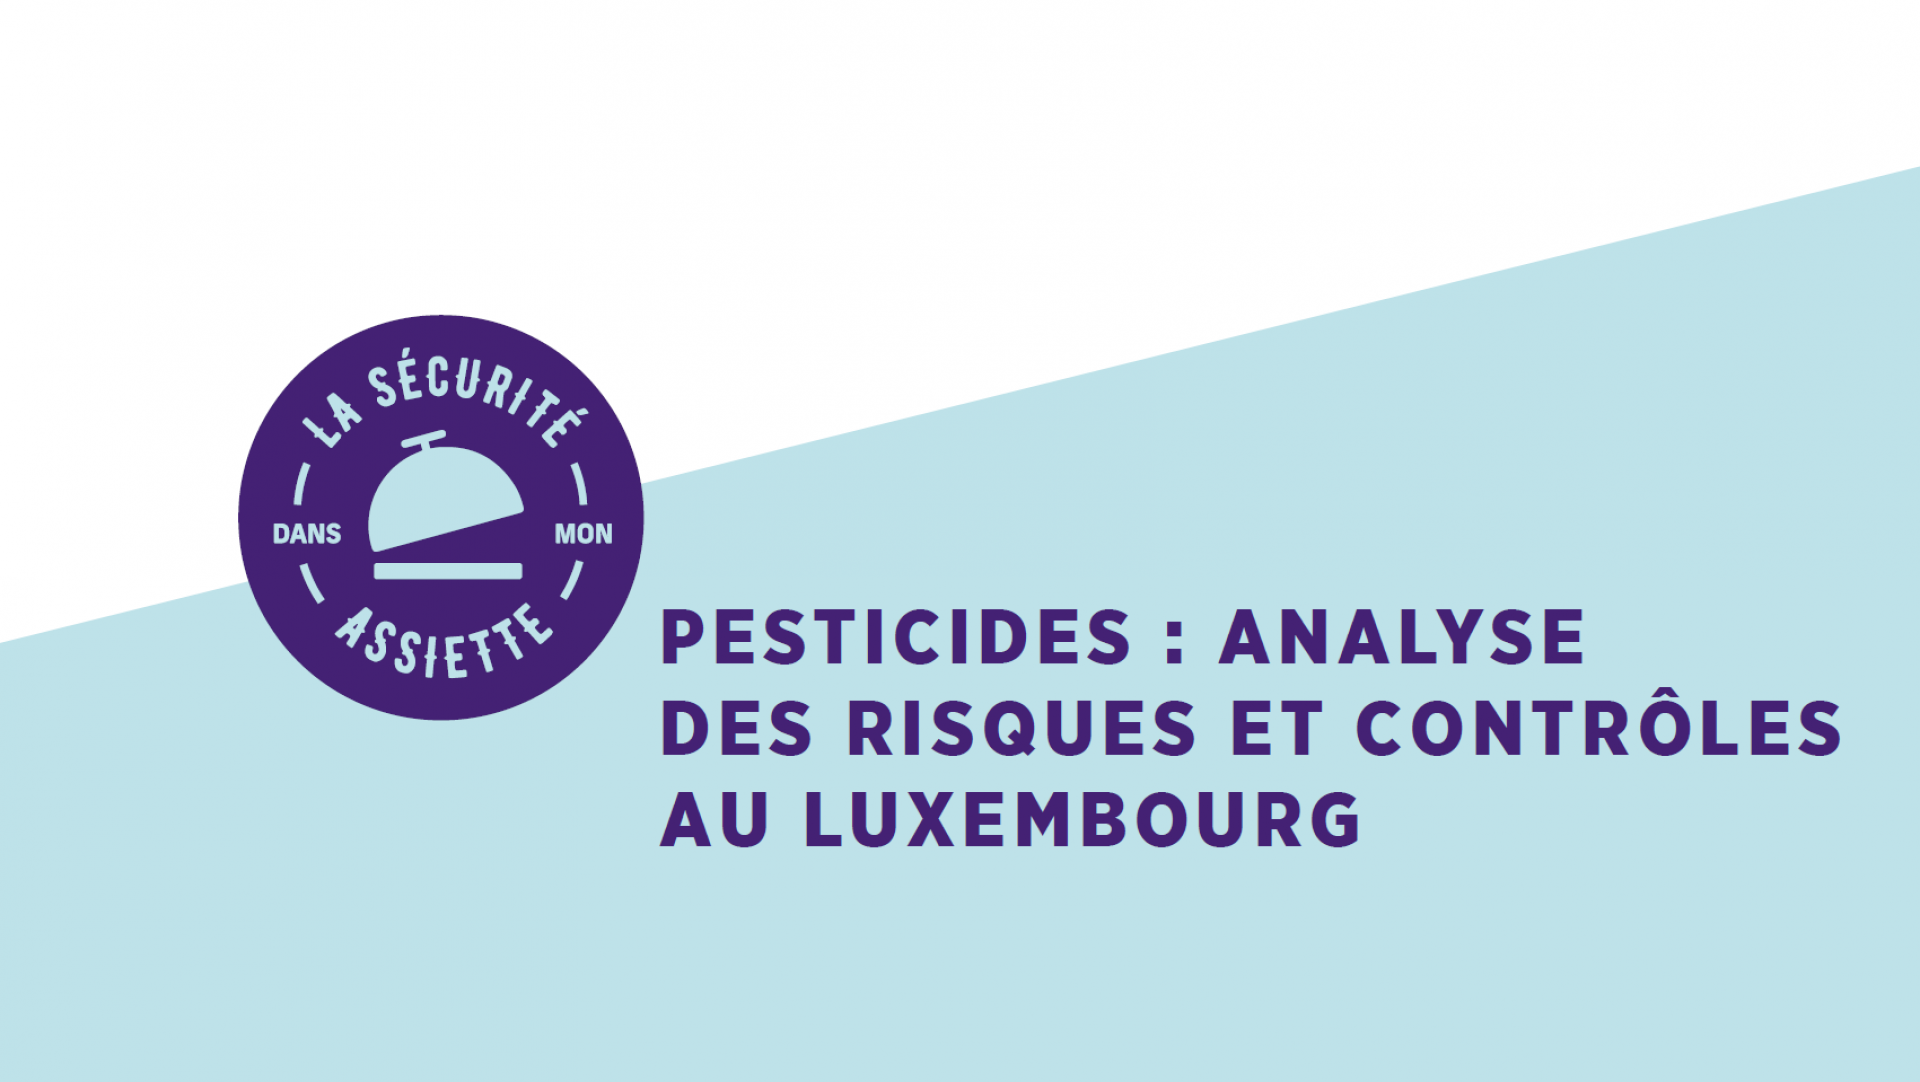 Pesticides: Analyse des risques et contrôles (sous-titres UK)